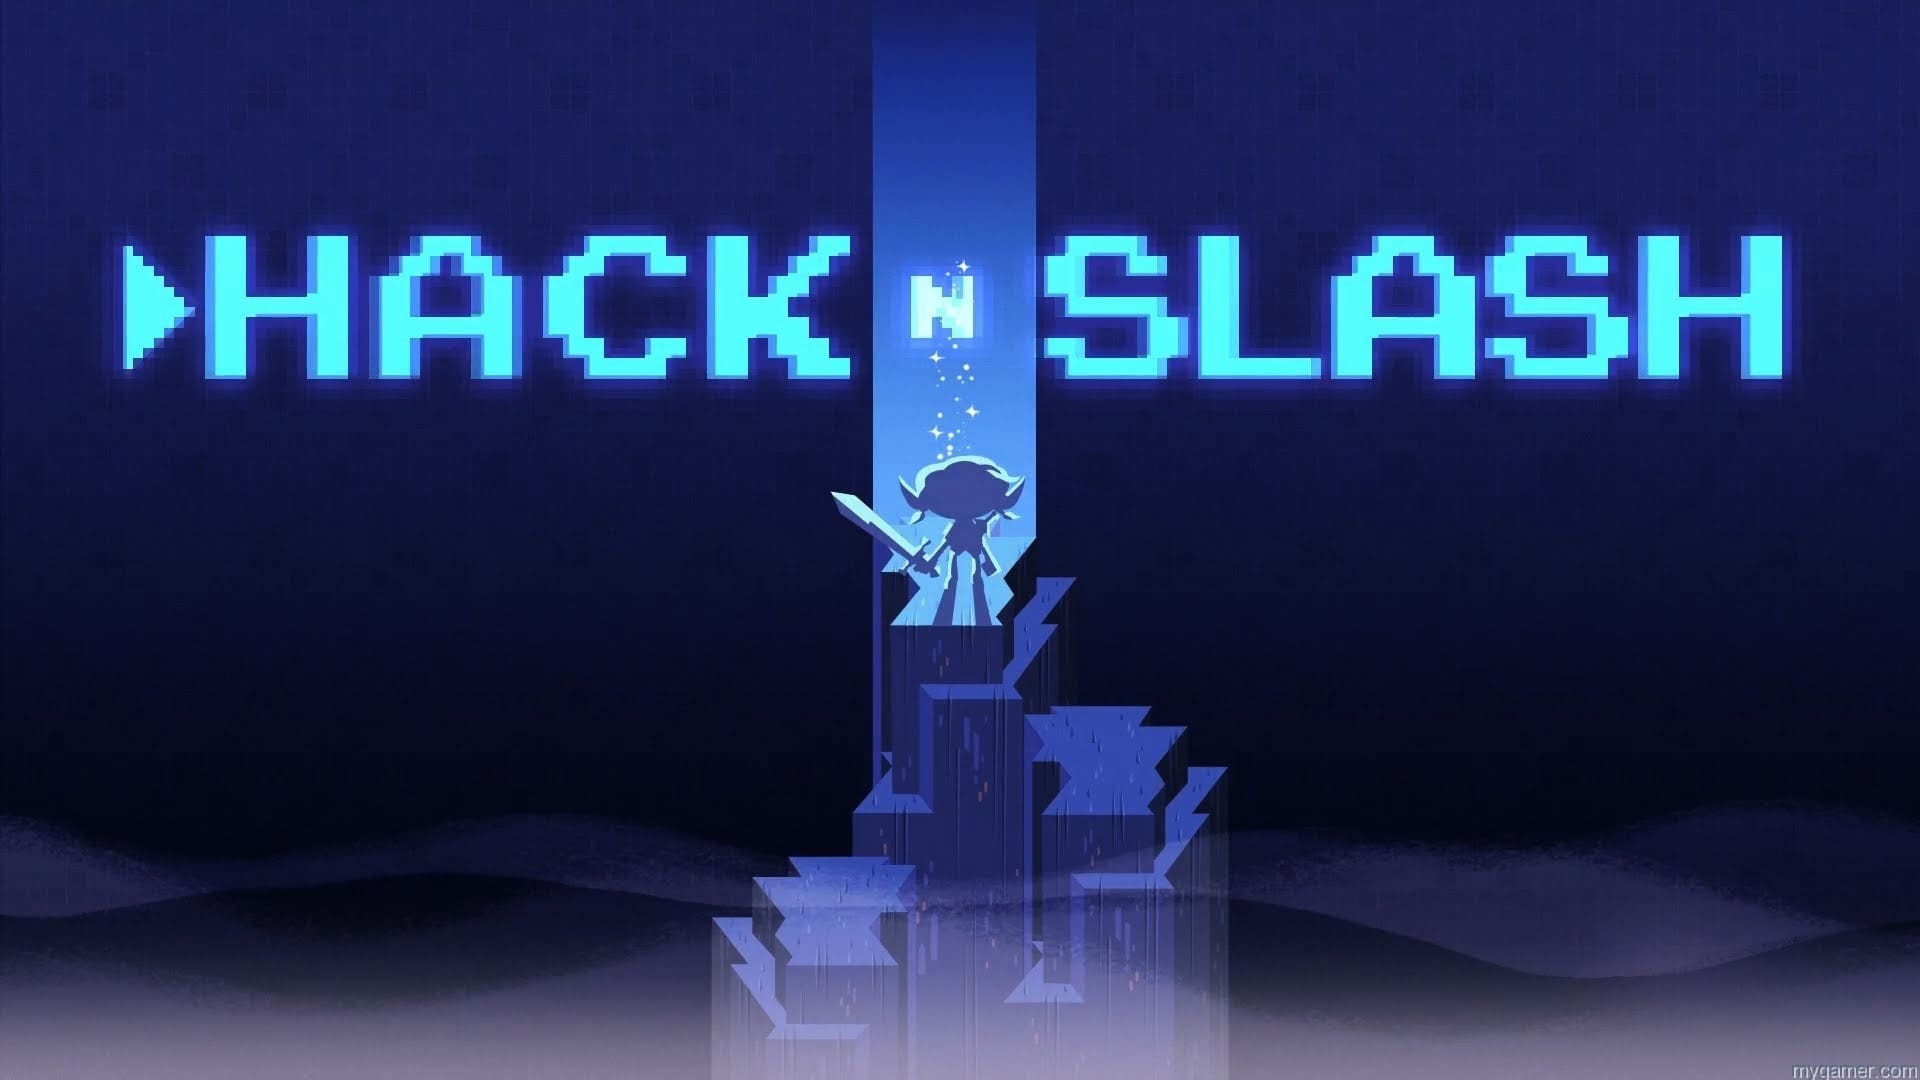 Hack N Slash banner